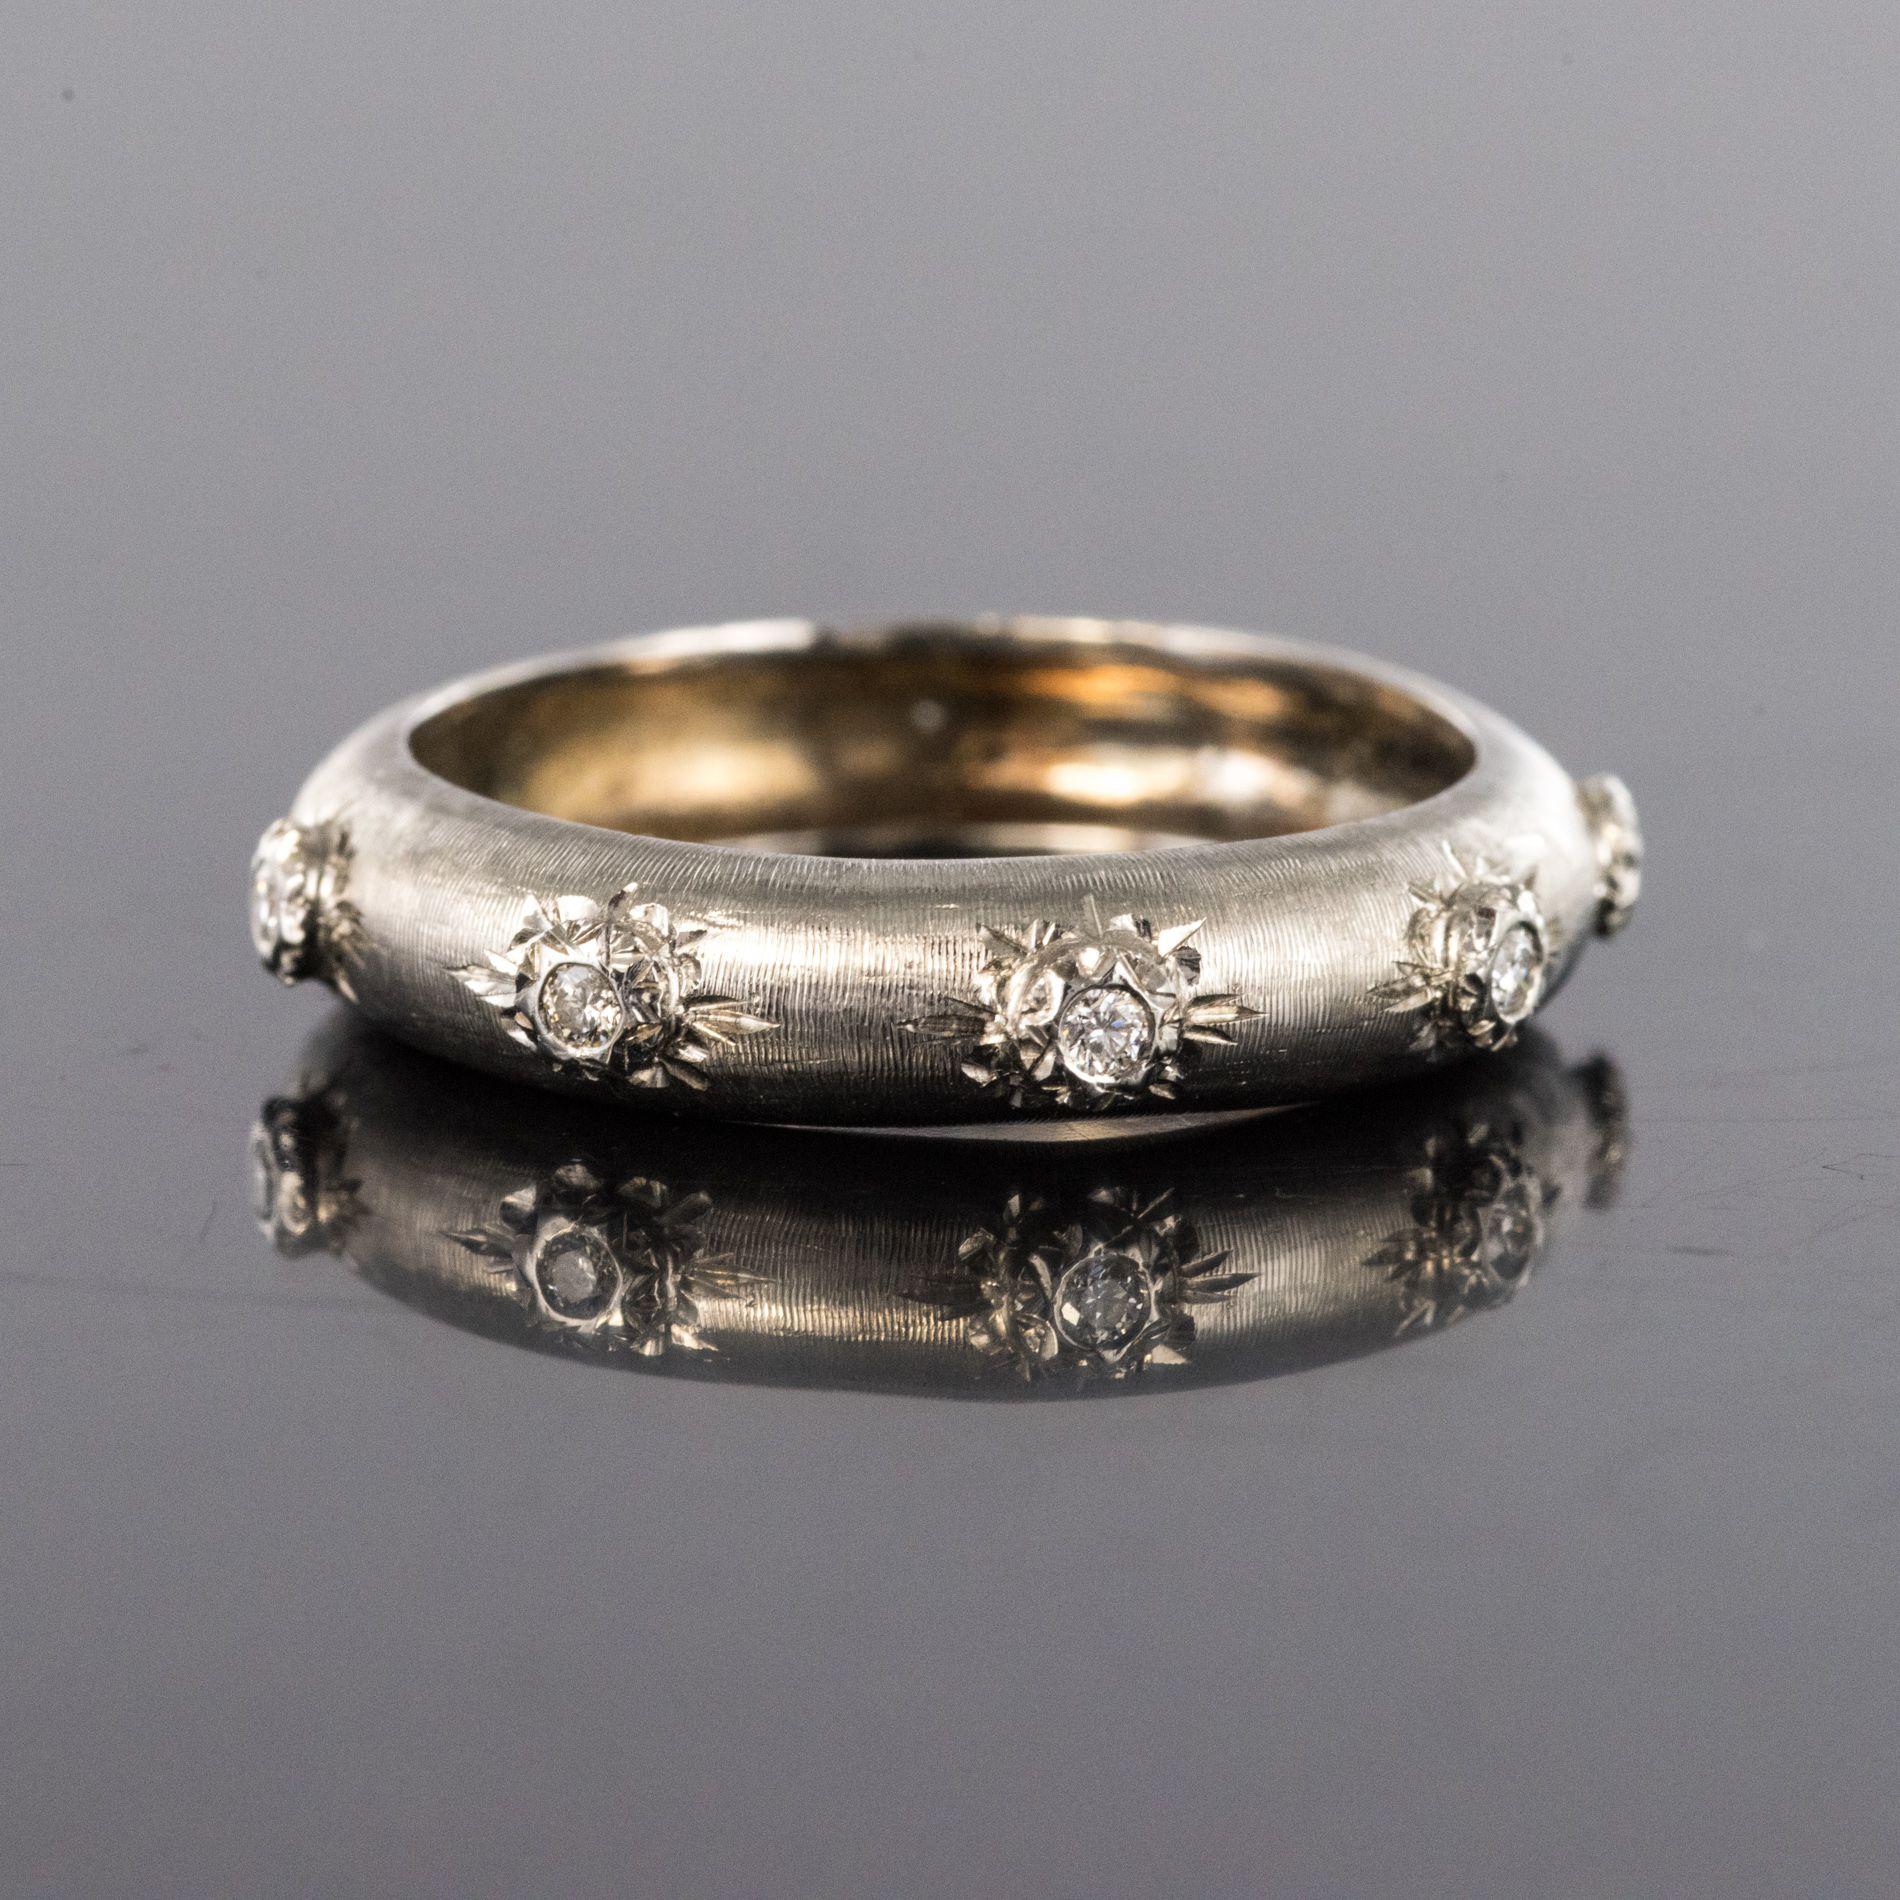 Renaissance Modern Brushed 18 Karat White Gold Diamond Band Ring